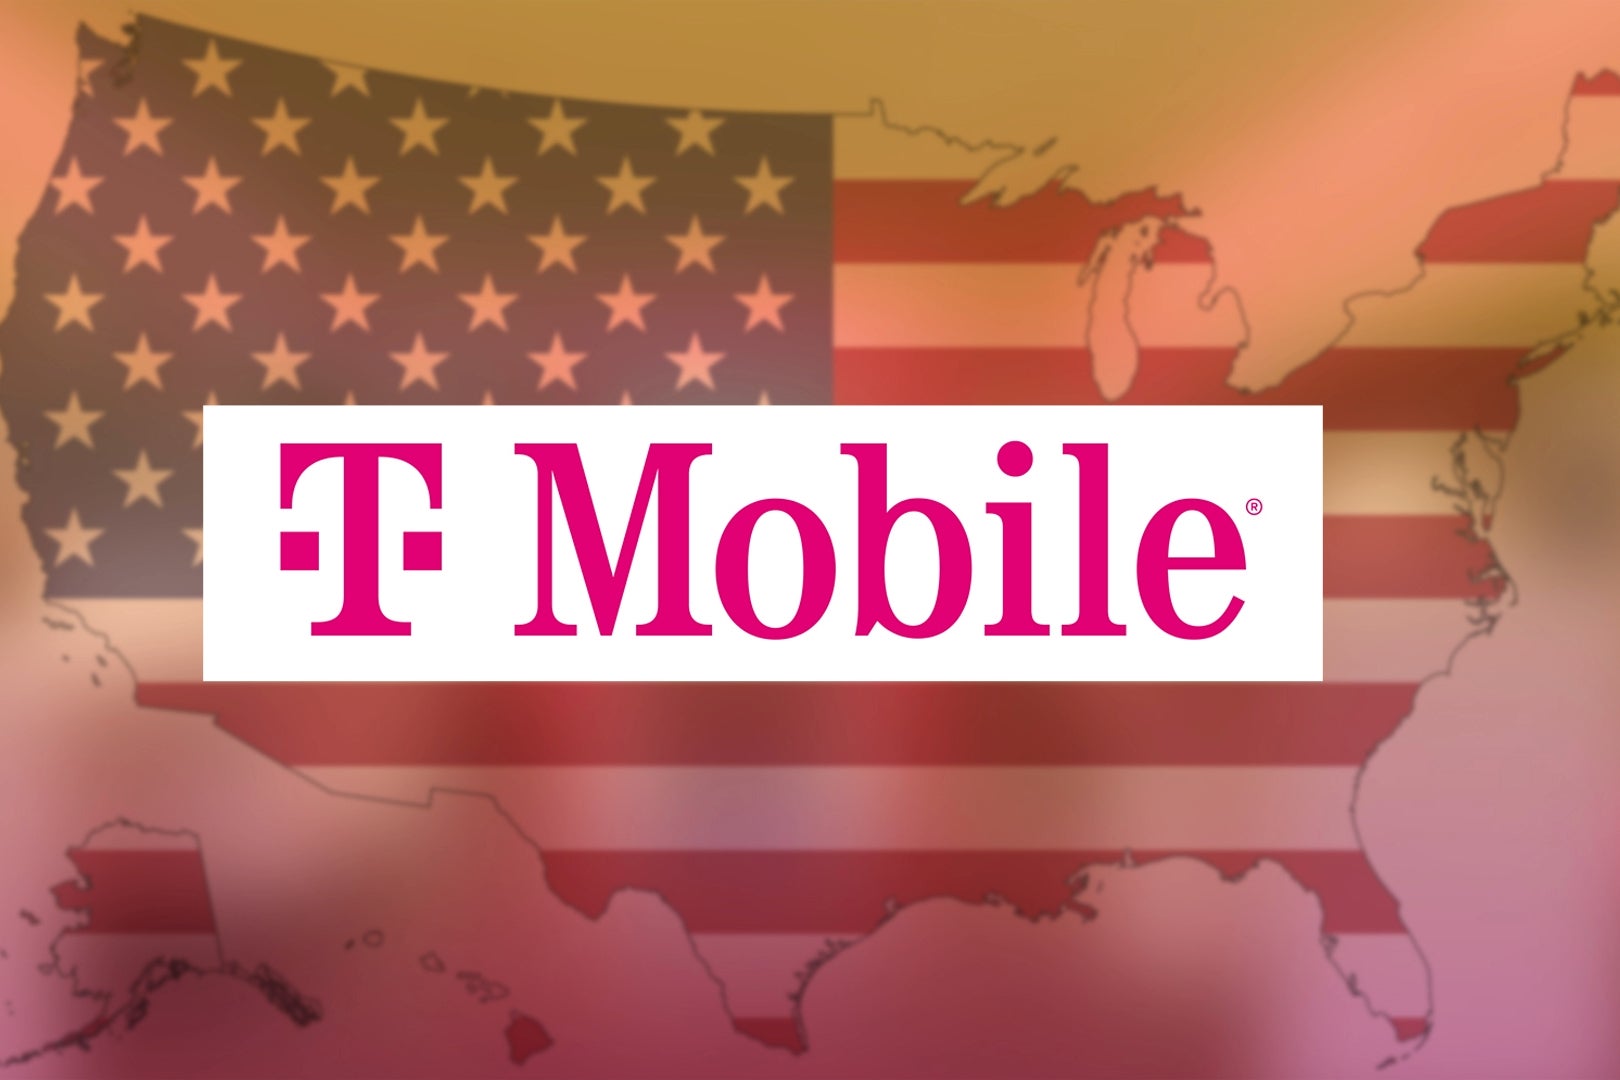 Vertreter von T-Mobile sagen "kein Handy"? Dann gib ihnen ein High Five und kauf es woanders